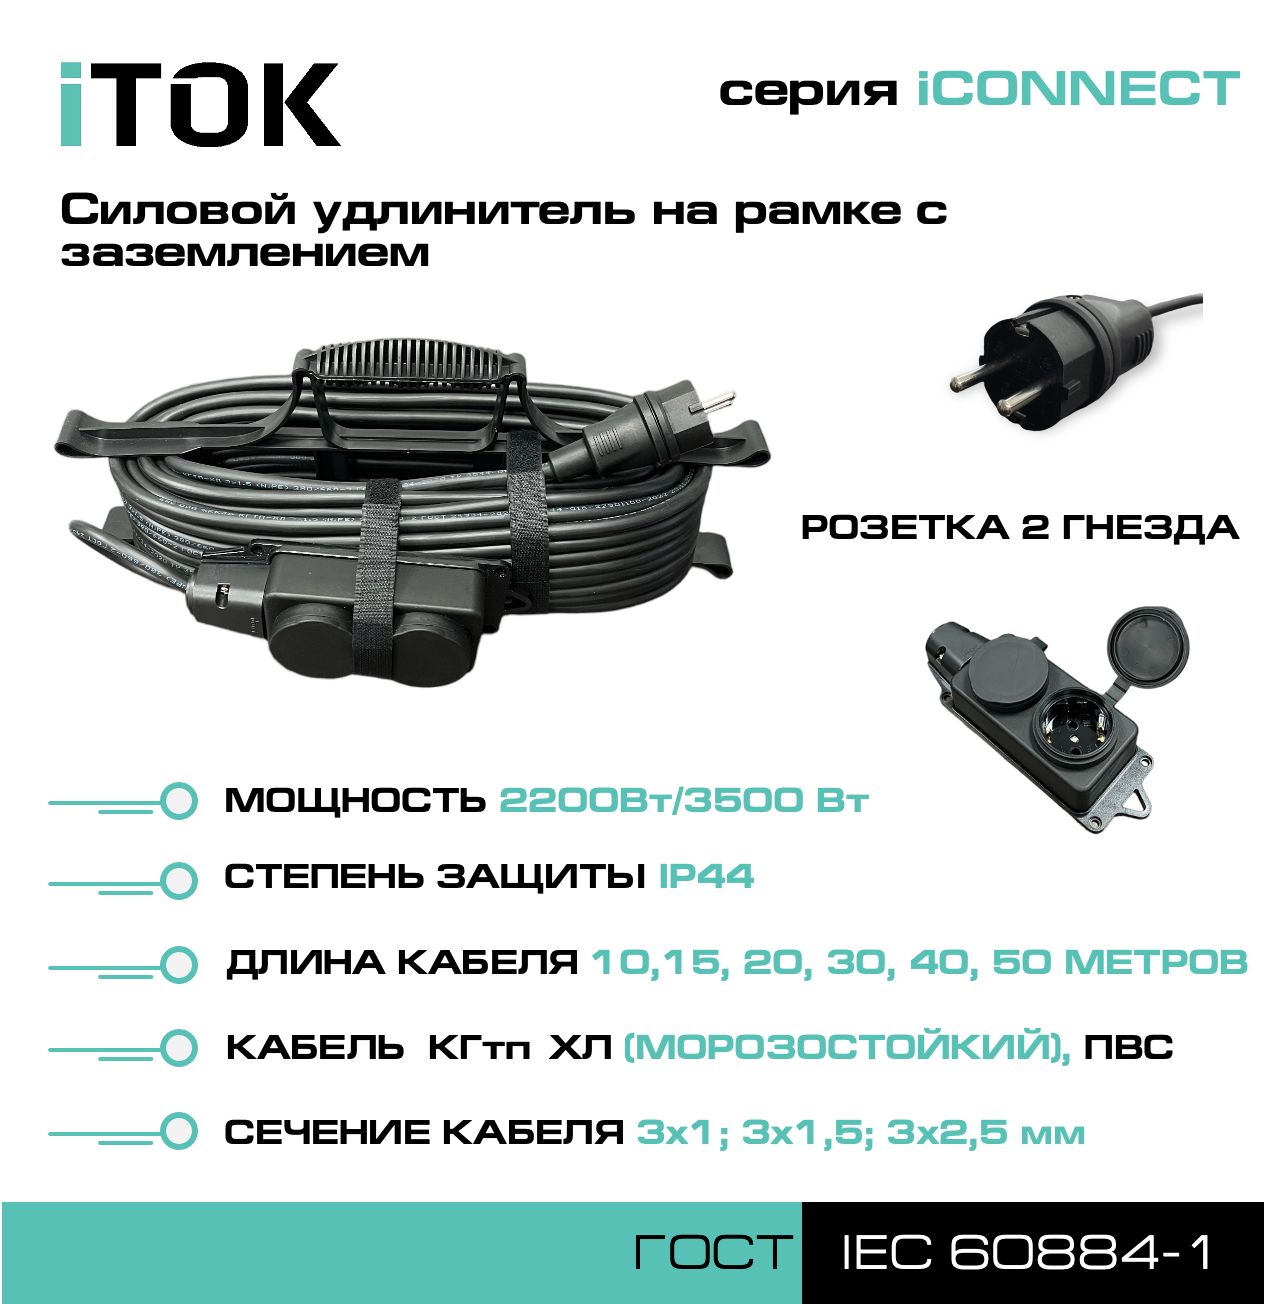 Удлинитель на рамке с заземлением серии iTOK iCONNECT ПВС 3х1 мм 2 гнезда IP44 30 м